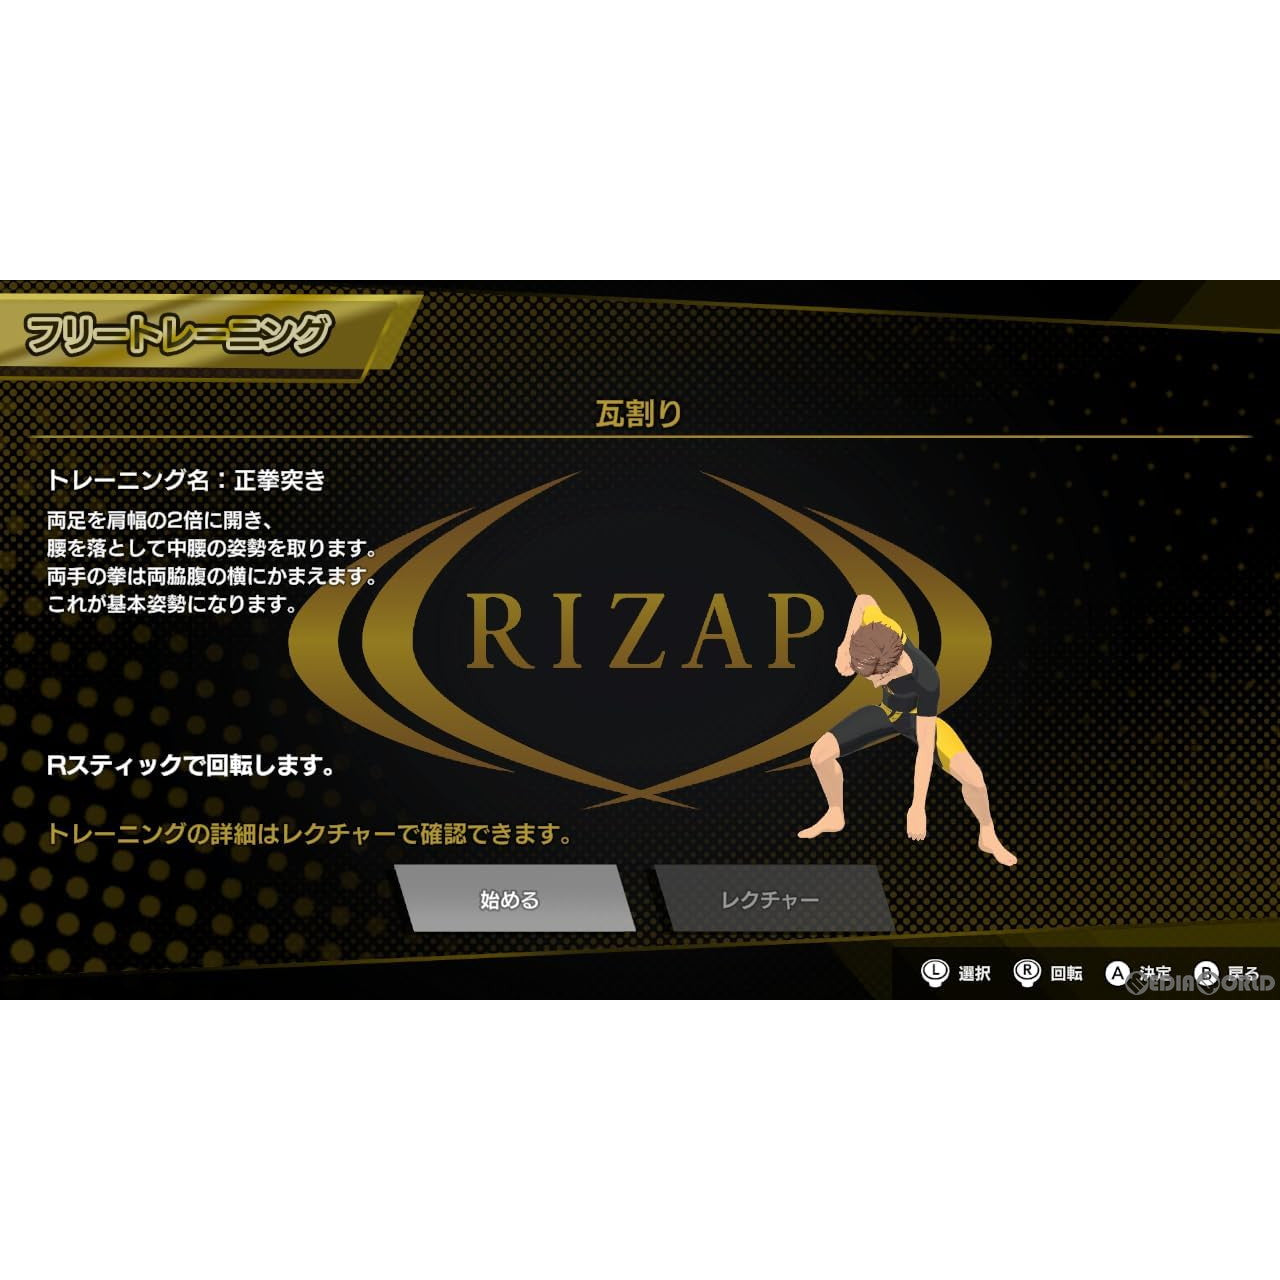 【予約前日出荷】[Switch]RIZAP for Nintendo Switch(ライザップ フォー ニンテンドースイッチ) ～体感♪リズムトレーニング～(20240627)